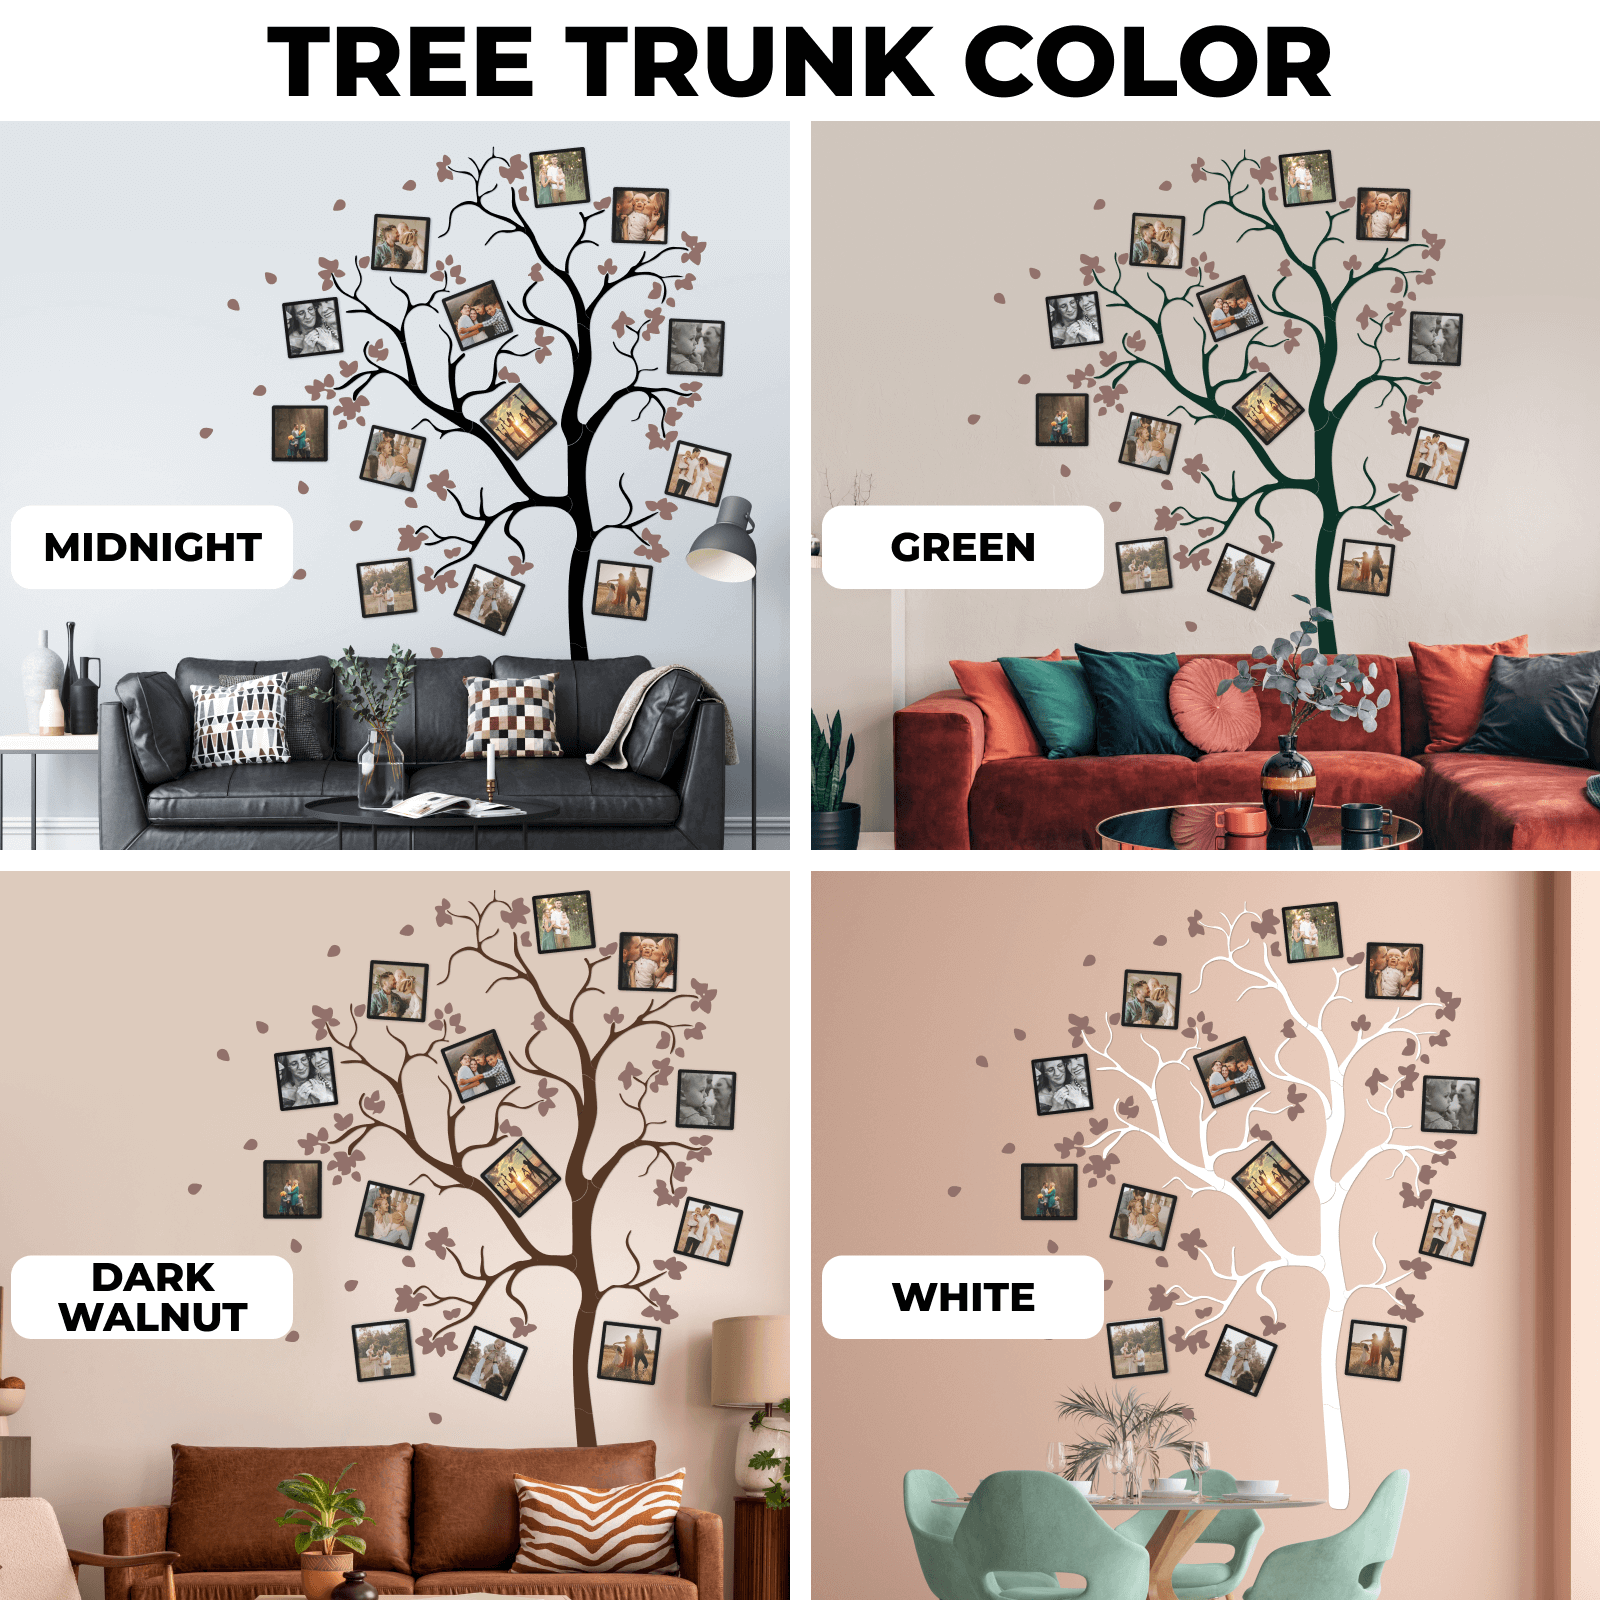  decorative family tree